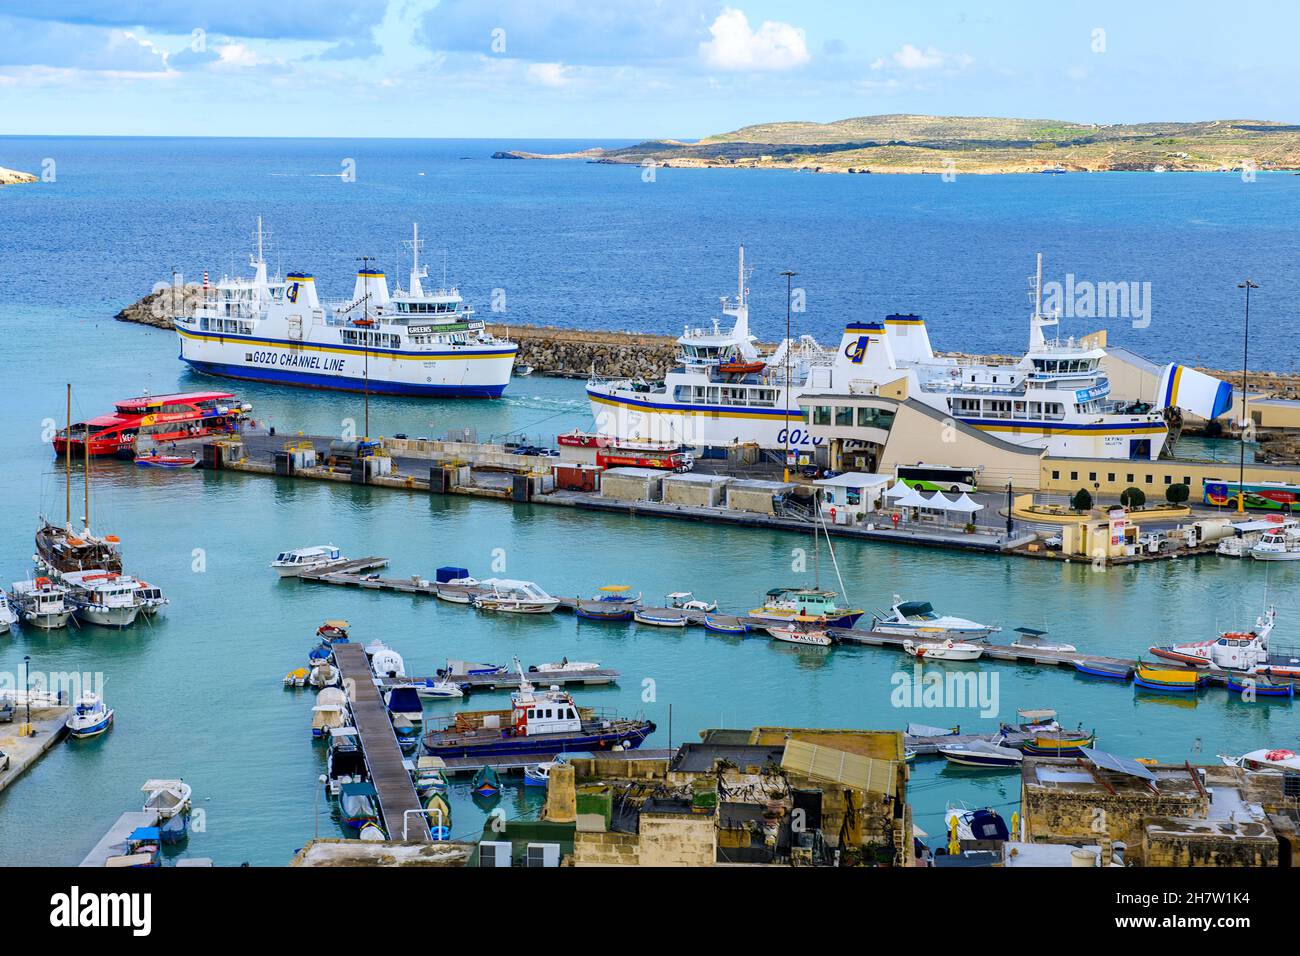 Hafen von Mgarr mit Fährterminal, Insel Gozo, Malta, Europa Stock Photo